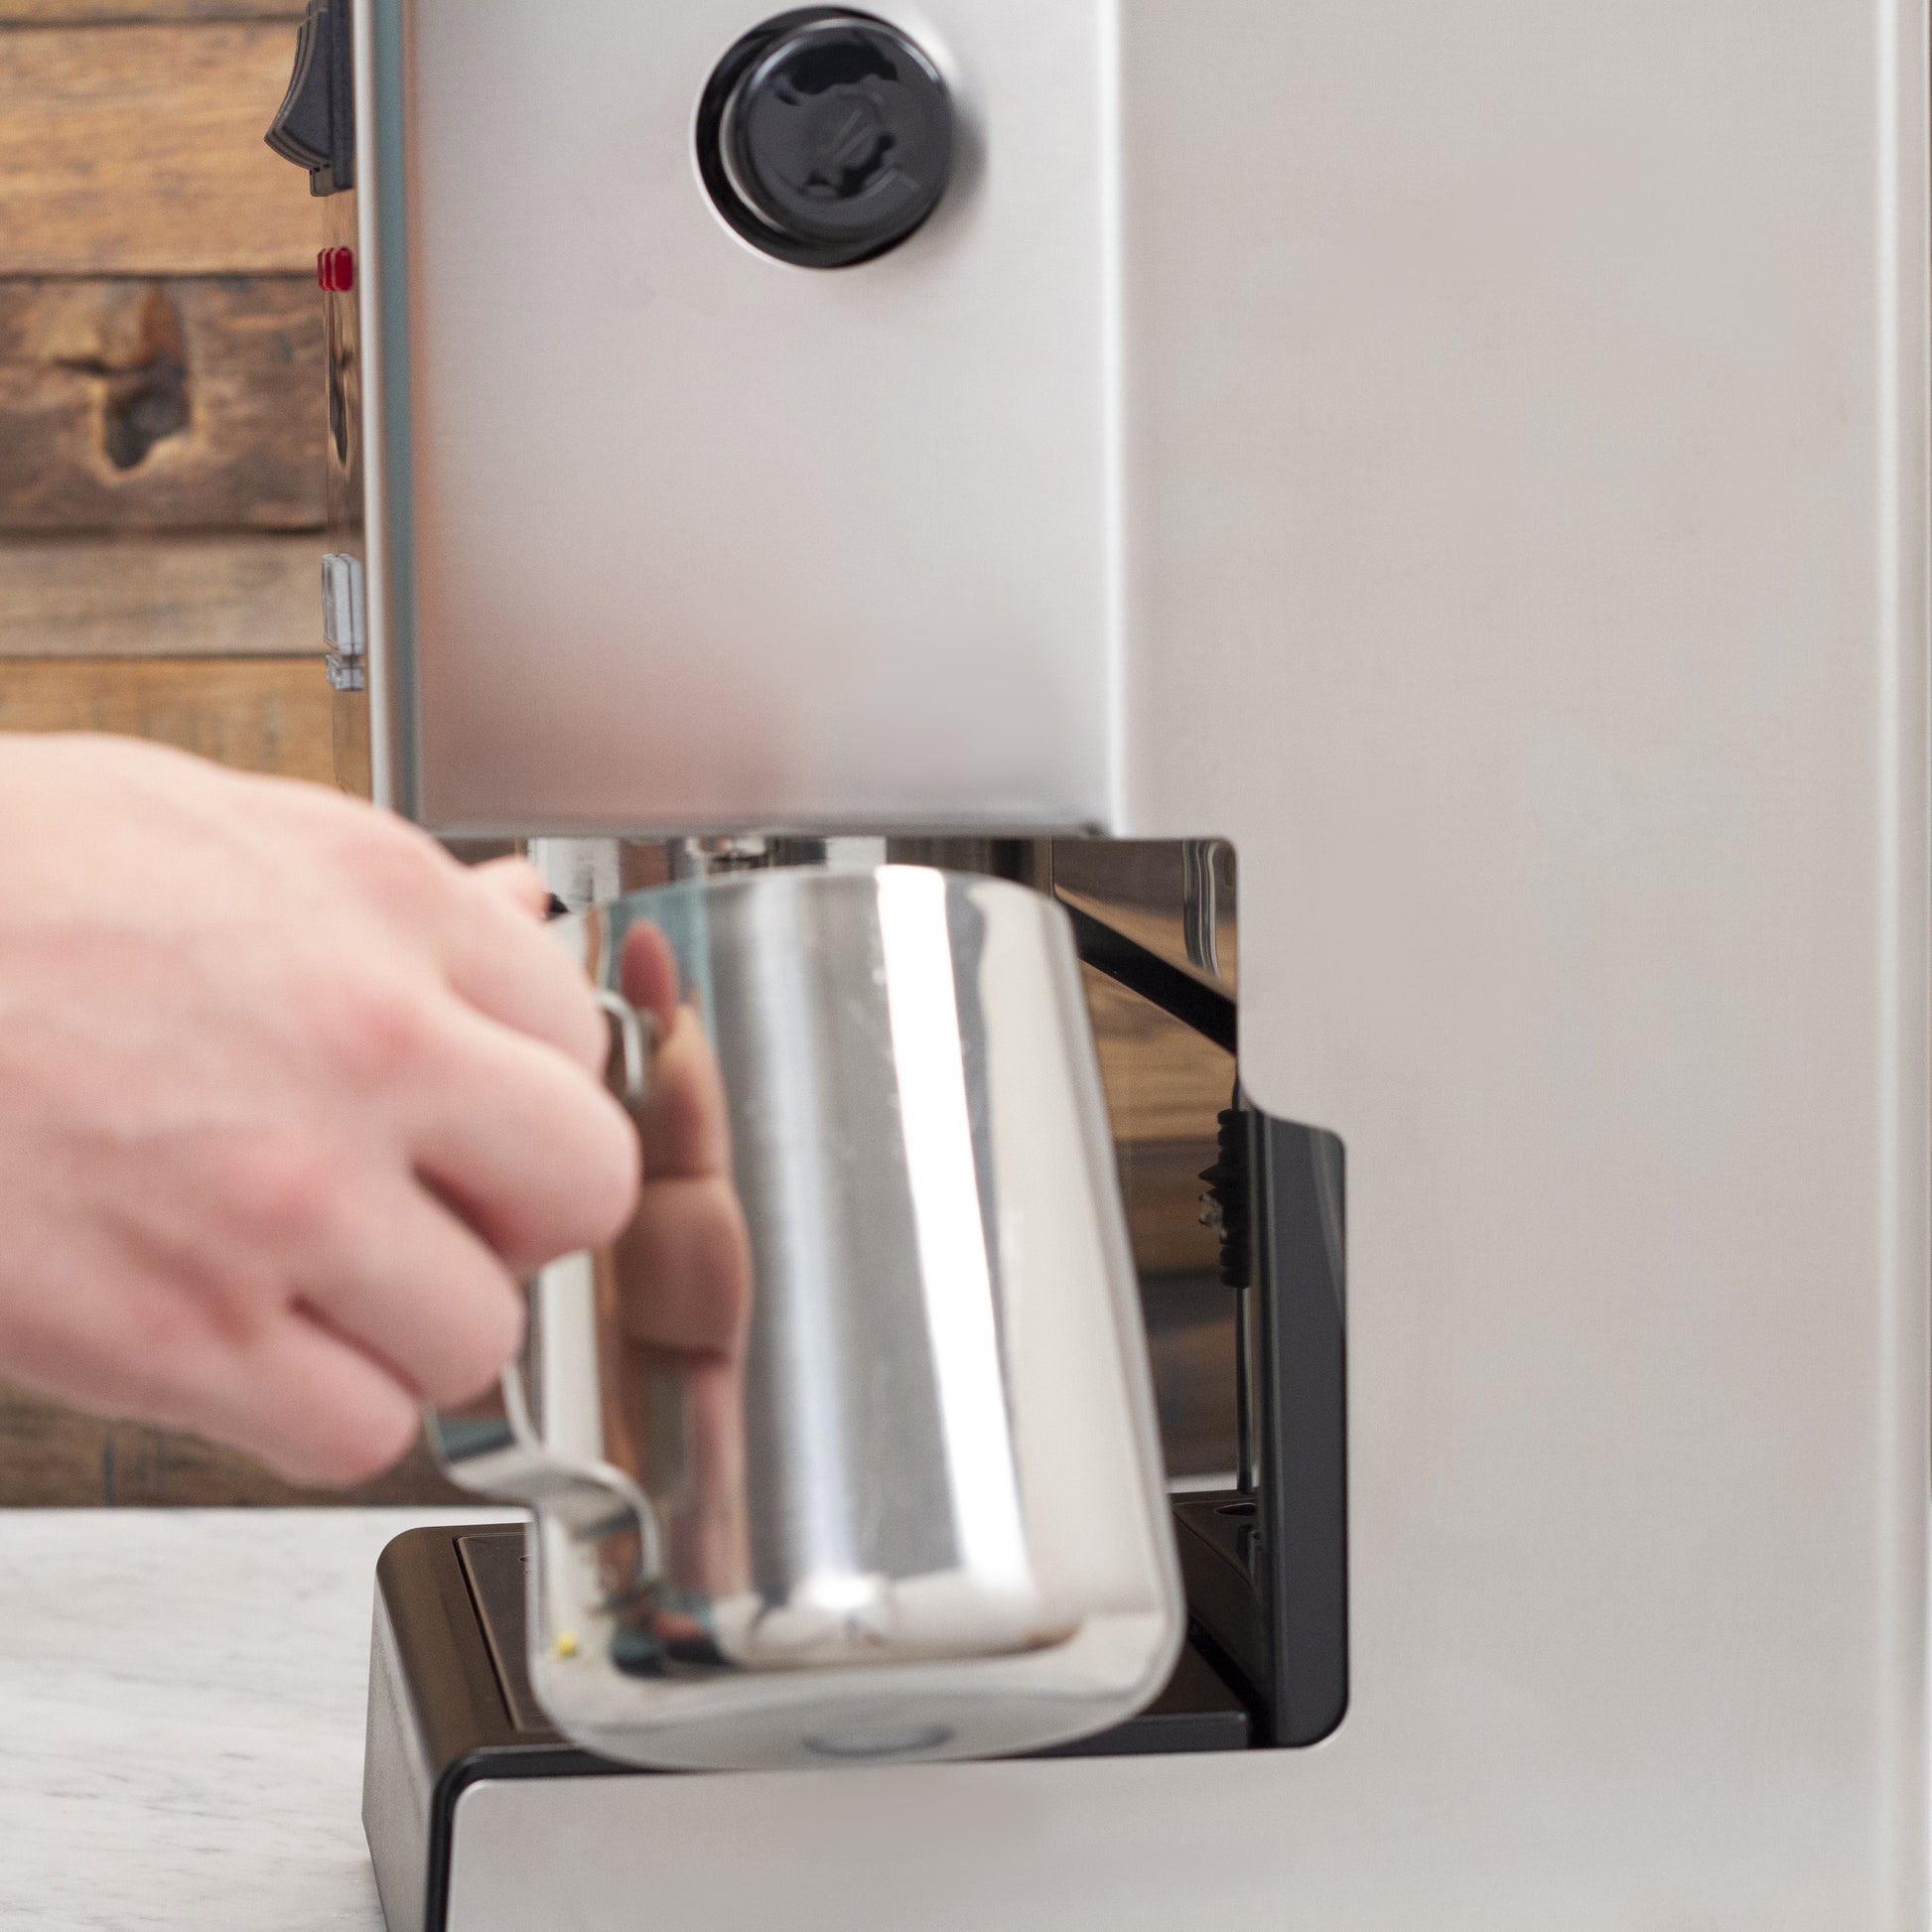 Gaggia Classic Evo Pro Semi-Automatic Espresso Machine – Whole Latte Love